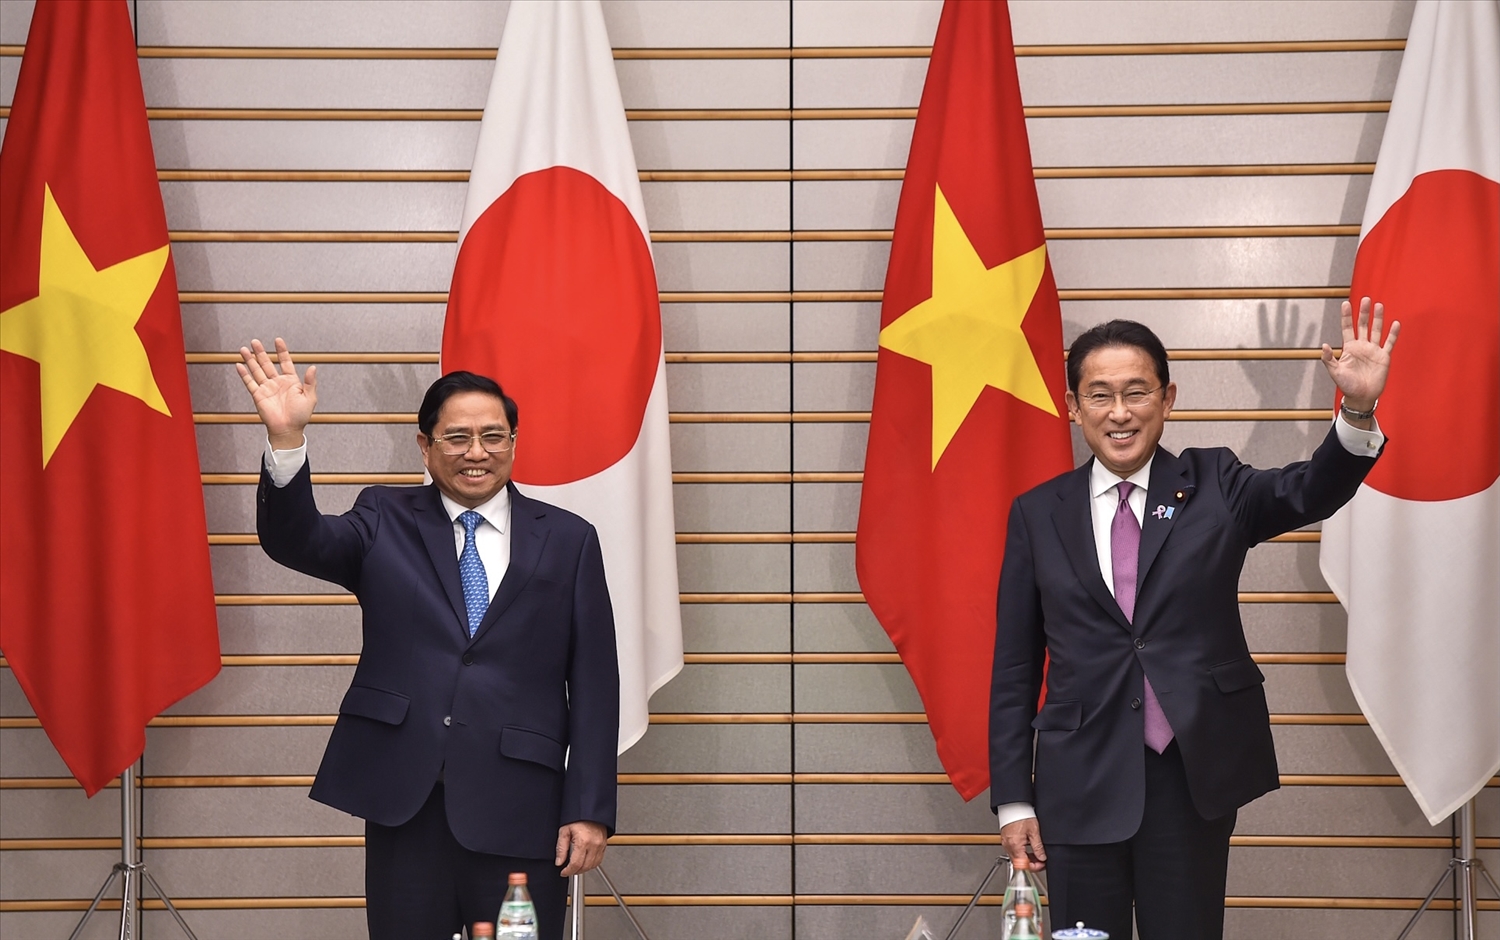 Thủ tướng Phạm Minh Chính và Thủ tướng Nhật Bản Kishida Fumio tại Hội đàm cấp cao Việt Nam-Nhật Bản, ngày 24/11/2021. Thủ tướng Nhật Bản thông báo Chính phủ Nhật Bản sẽ hỗ trợ thêm 1,5 triệu liều vắc xin phòng Covid-19 cho Chính phủ Việt Nam.